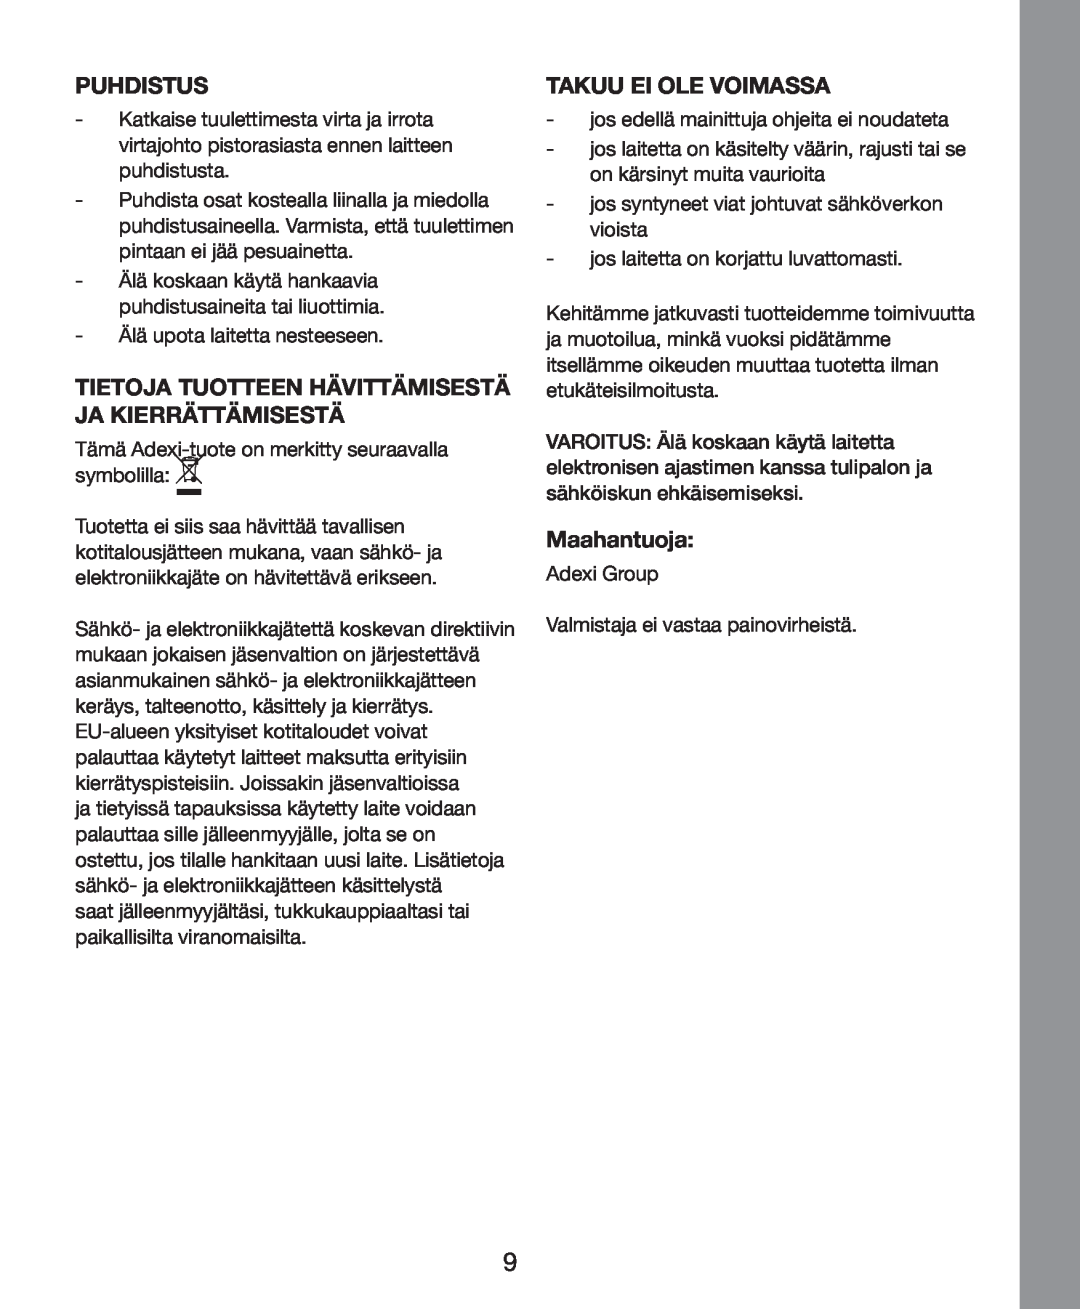 Melissa 271-011 manual Puhdistus, Takuu Ei Ole Voimassa, Maahantuoja 